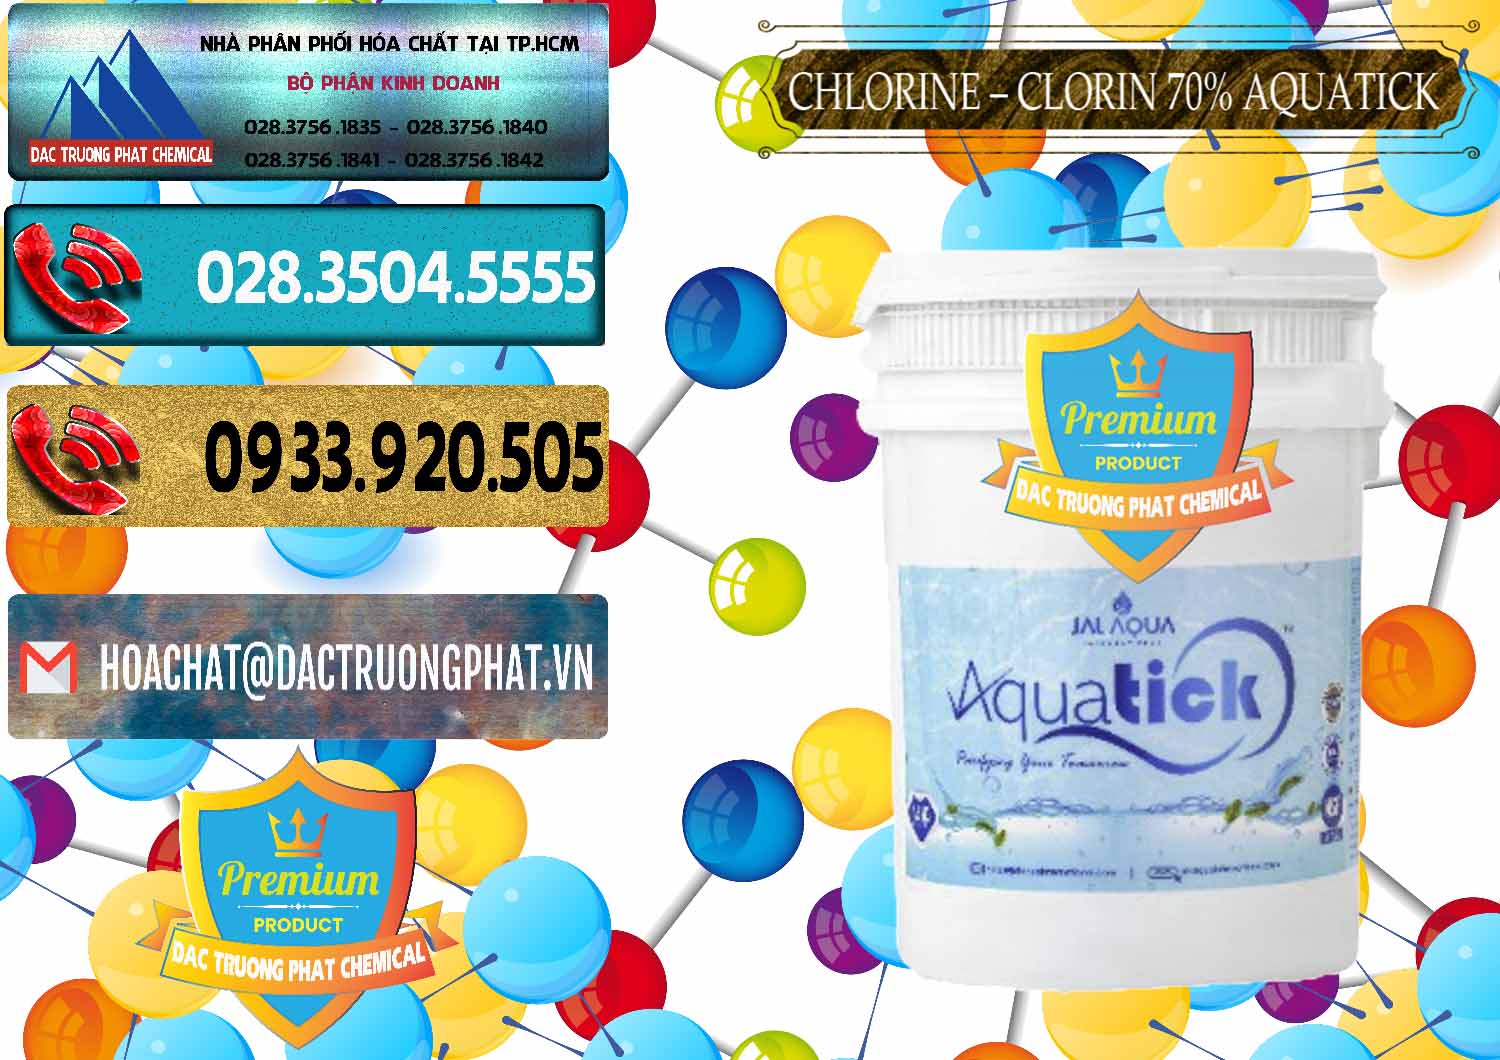 Đơn vị bán - phân phối Chlorine – Clorin 70% Aquatick Thùng Cao Jal Aqua Ấn Độ India - 0237 - Cty chuyên phân phối ( nhập khẩu ) hóa chất tại TP.HCM - hoachatdetnhuom.com